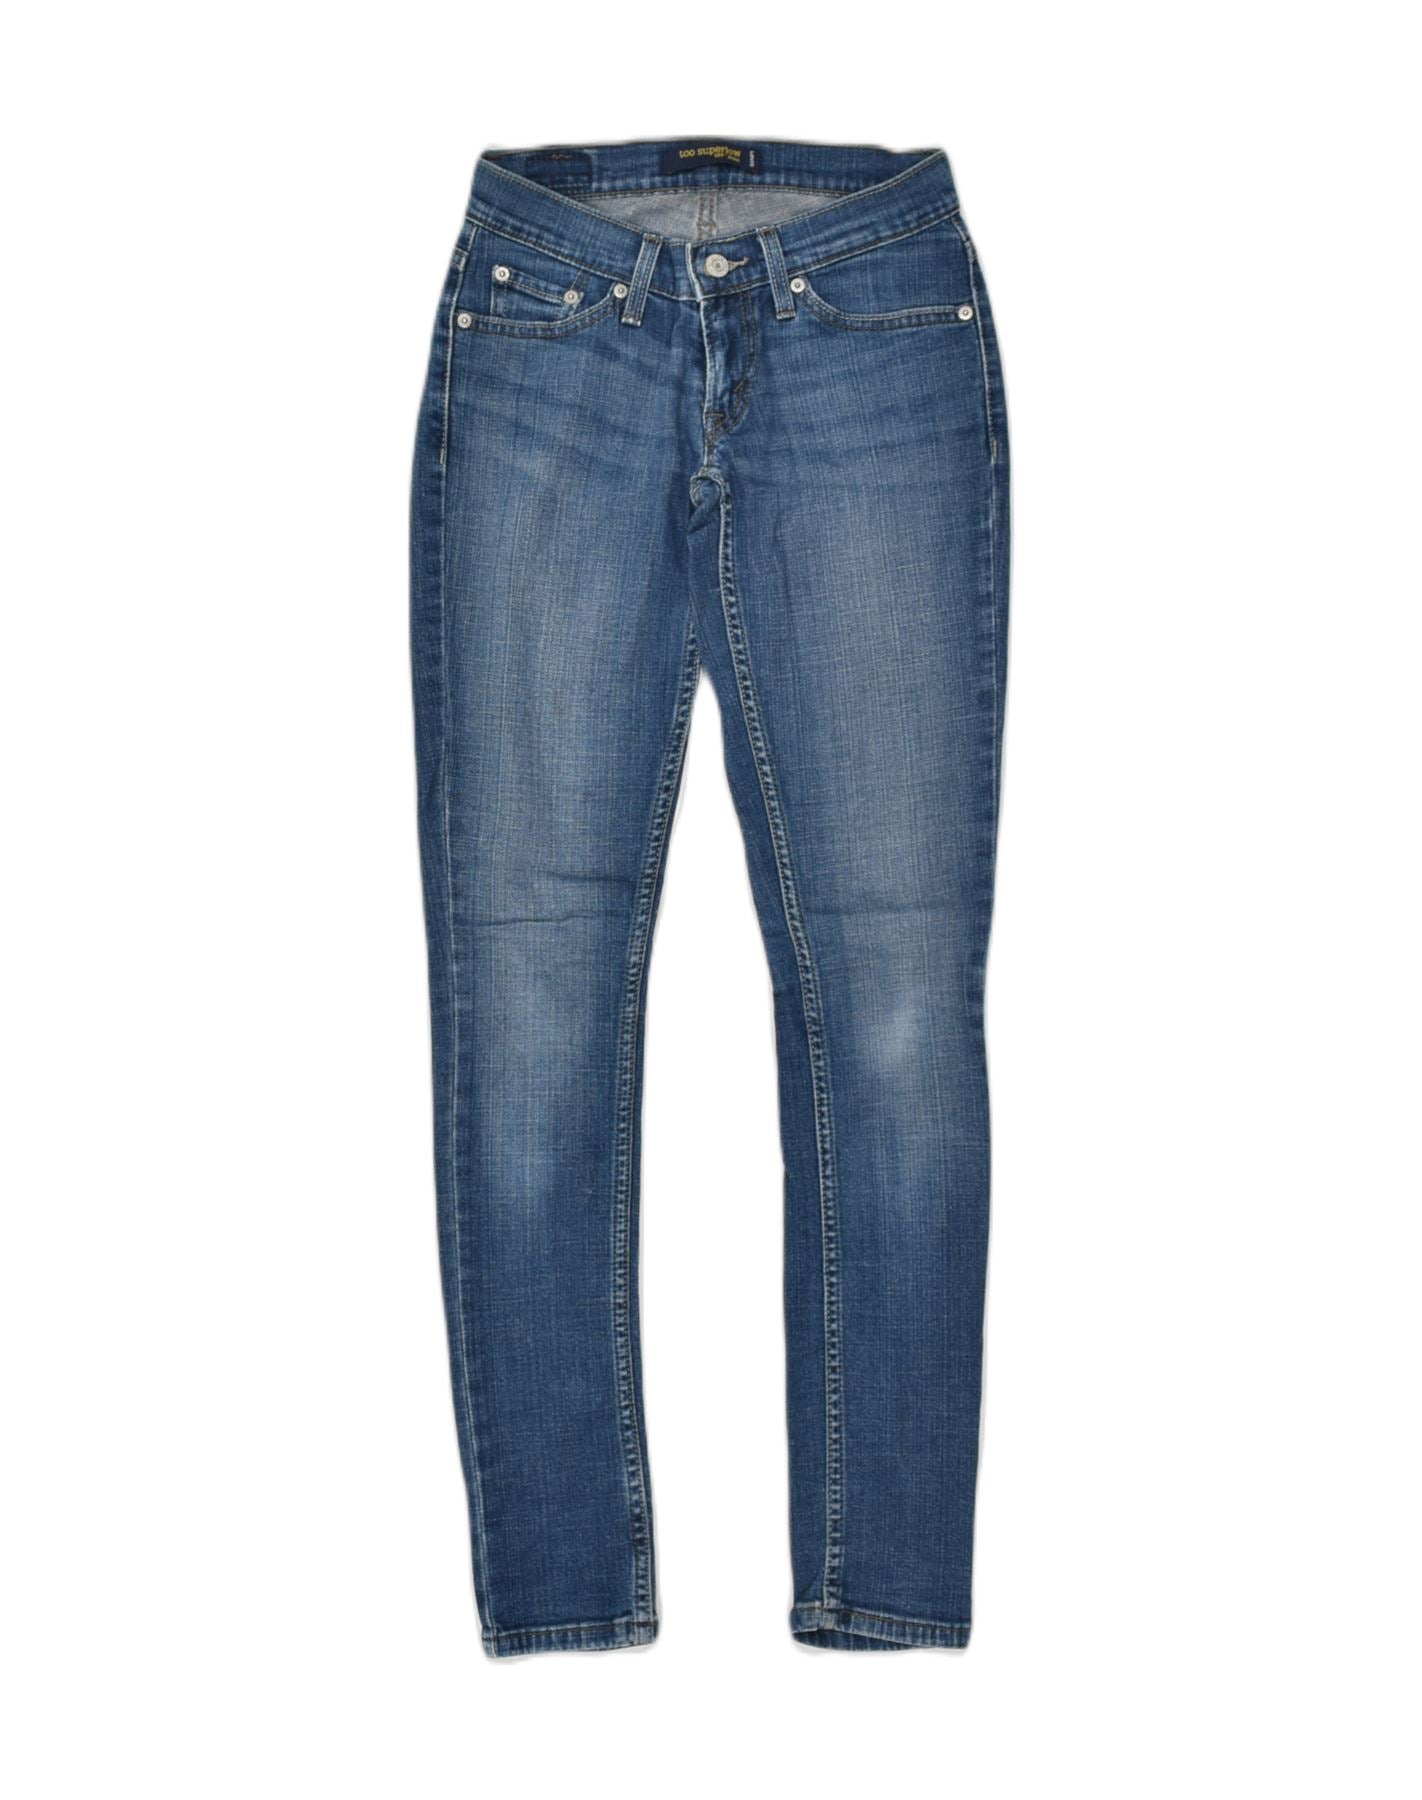 Artículos nuevos y usados en venta en Levi's Women's Jeans, Facebook  Marketplace